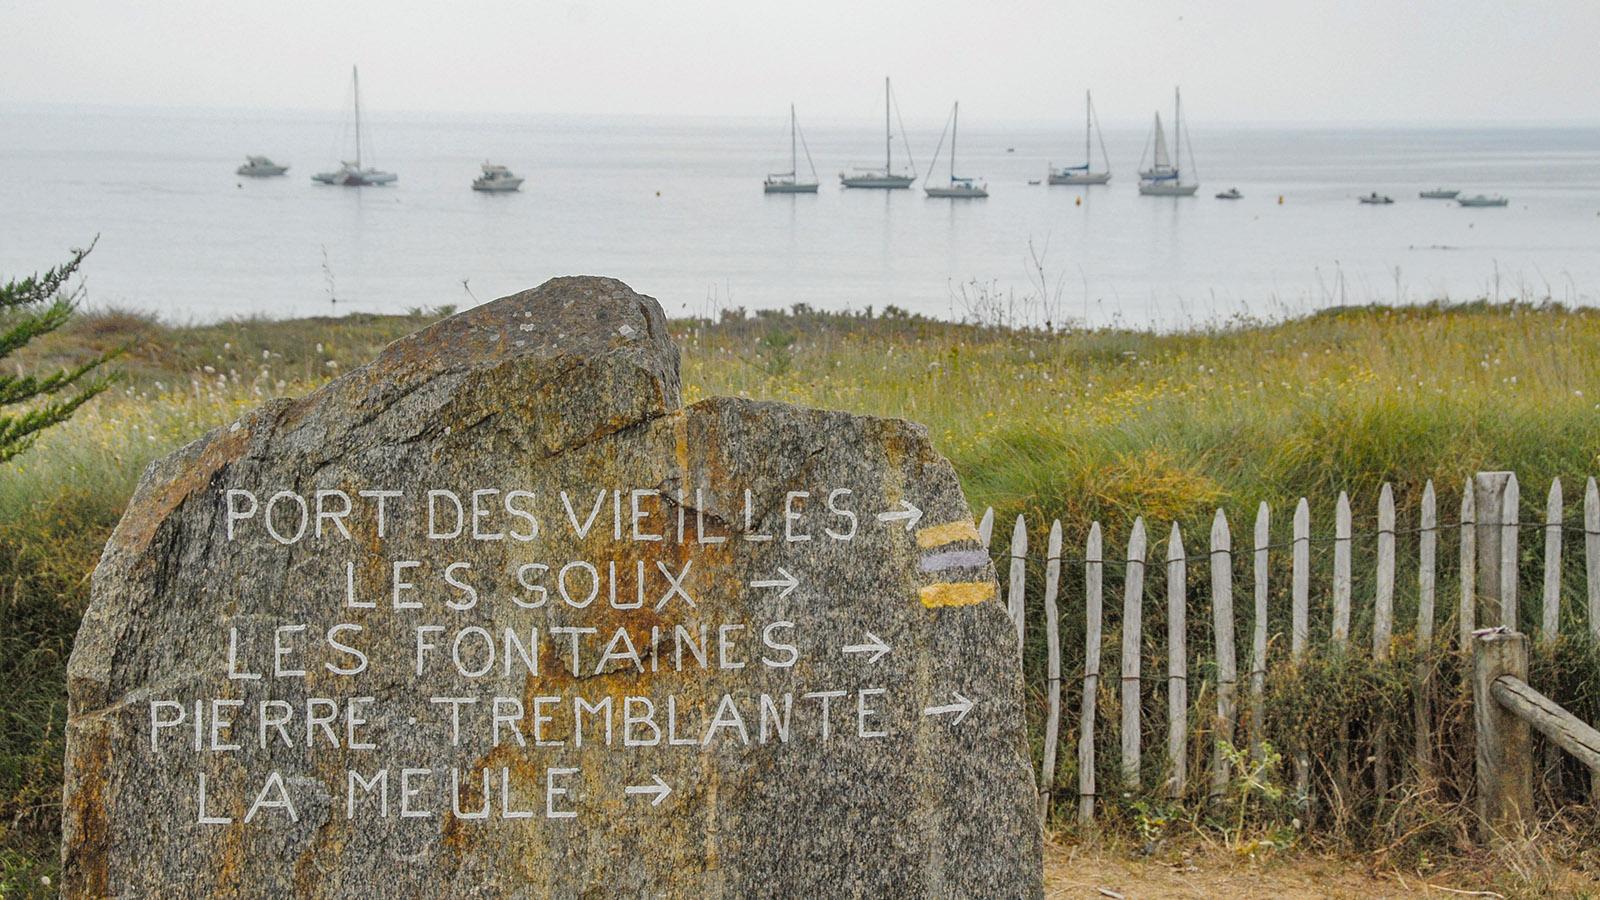 Île d'Yeu: Côte Sauvage: Plage des Vieilles. Foto: Hilke Maunder